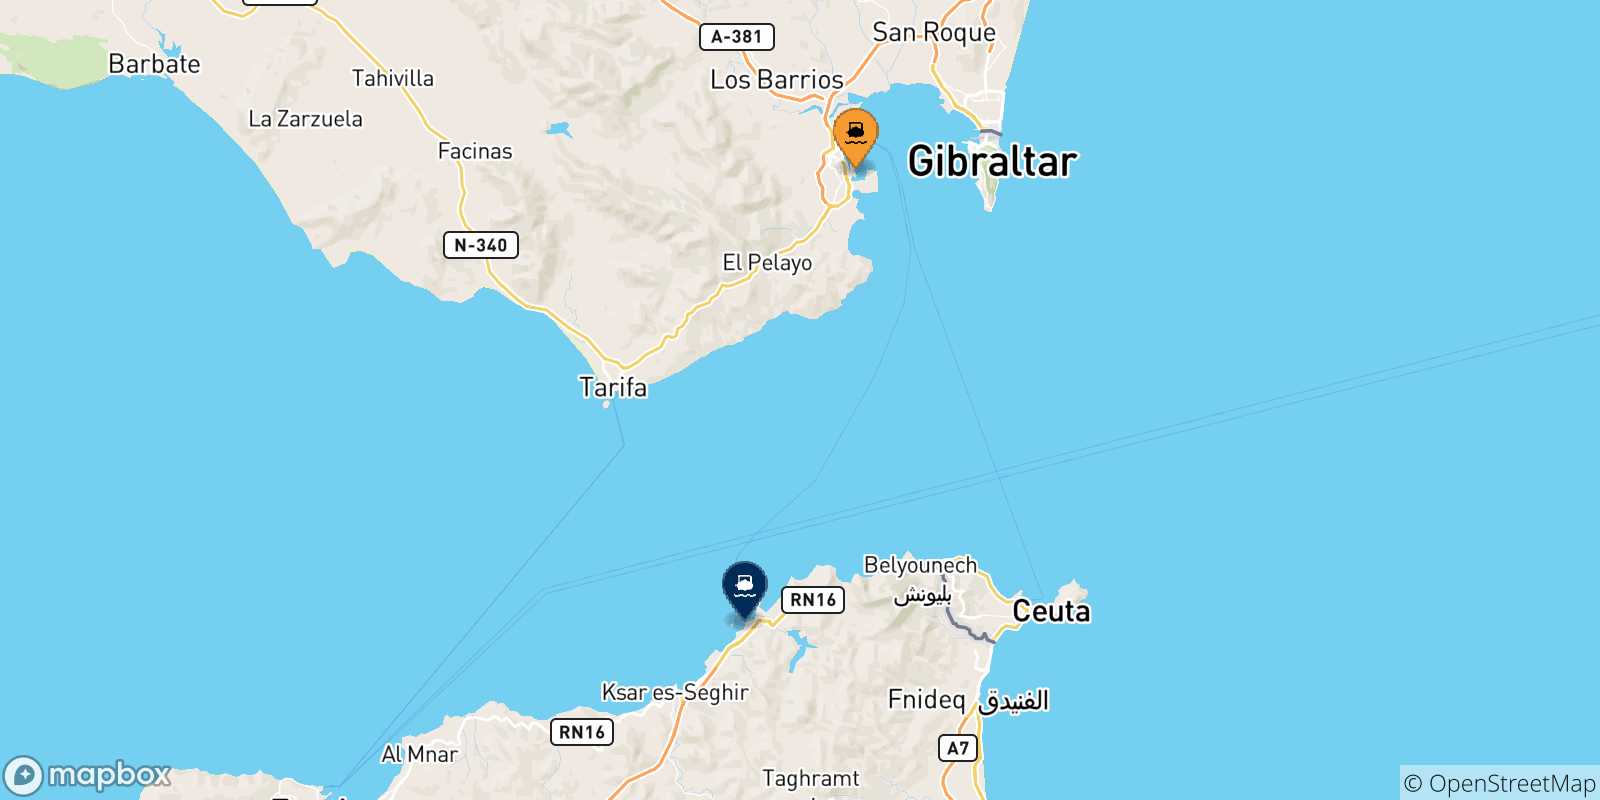 Mappa delle possibili rotte tra Algeciras e il Marocco